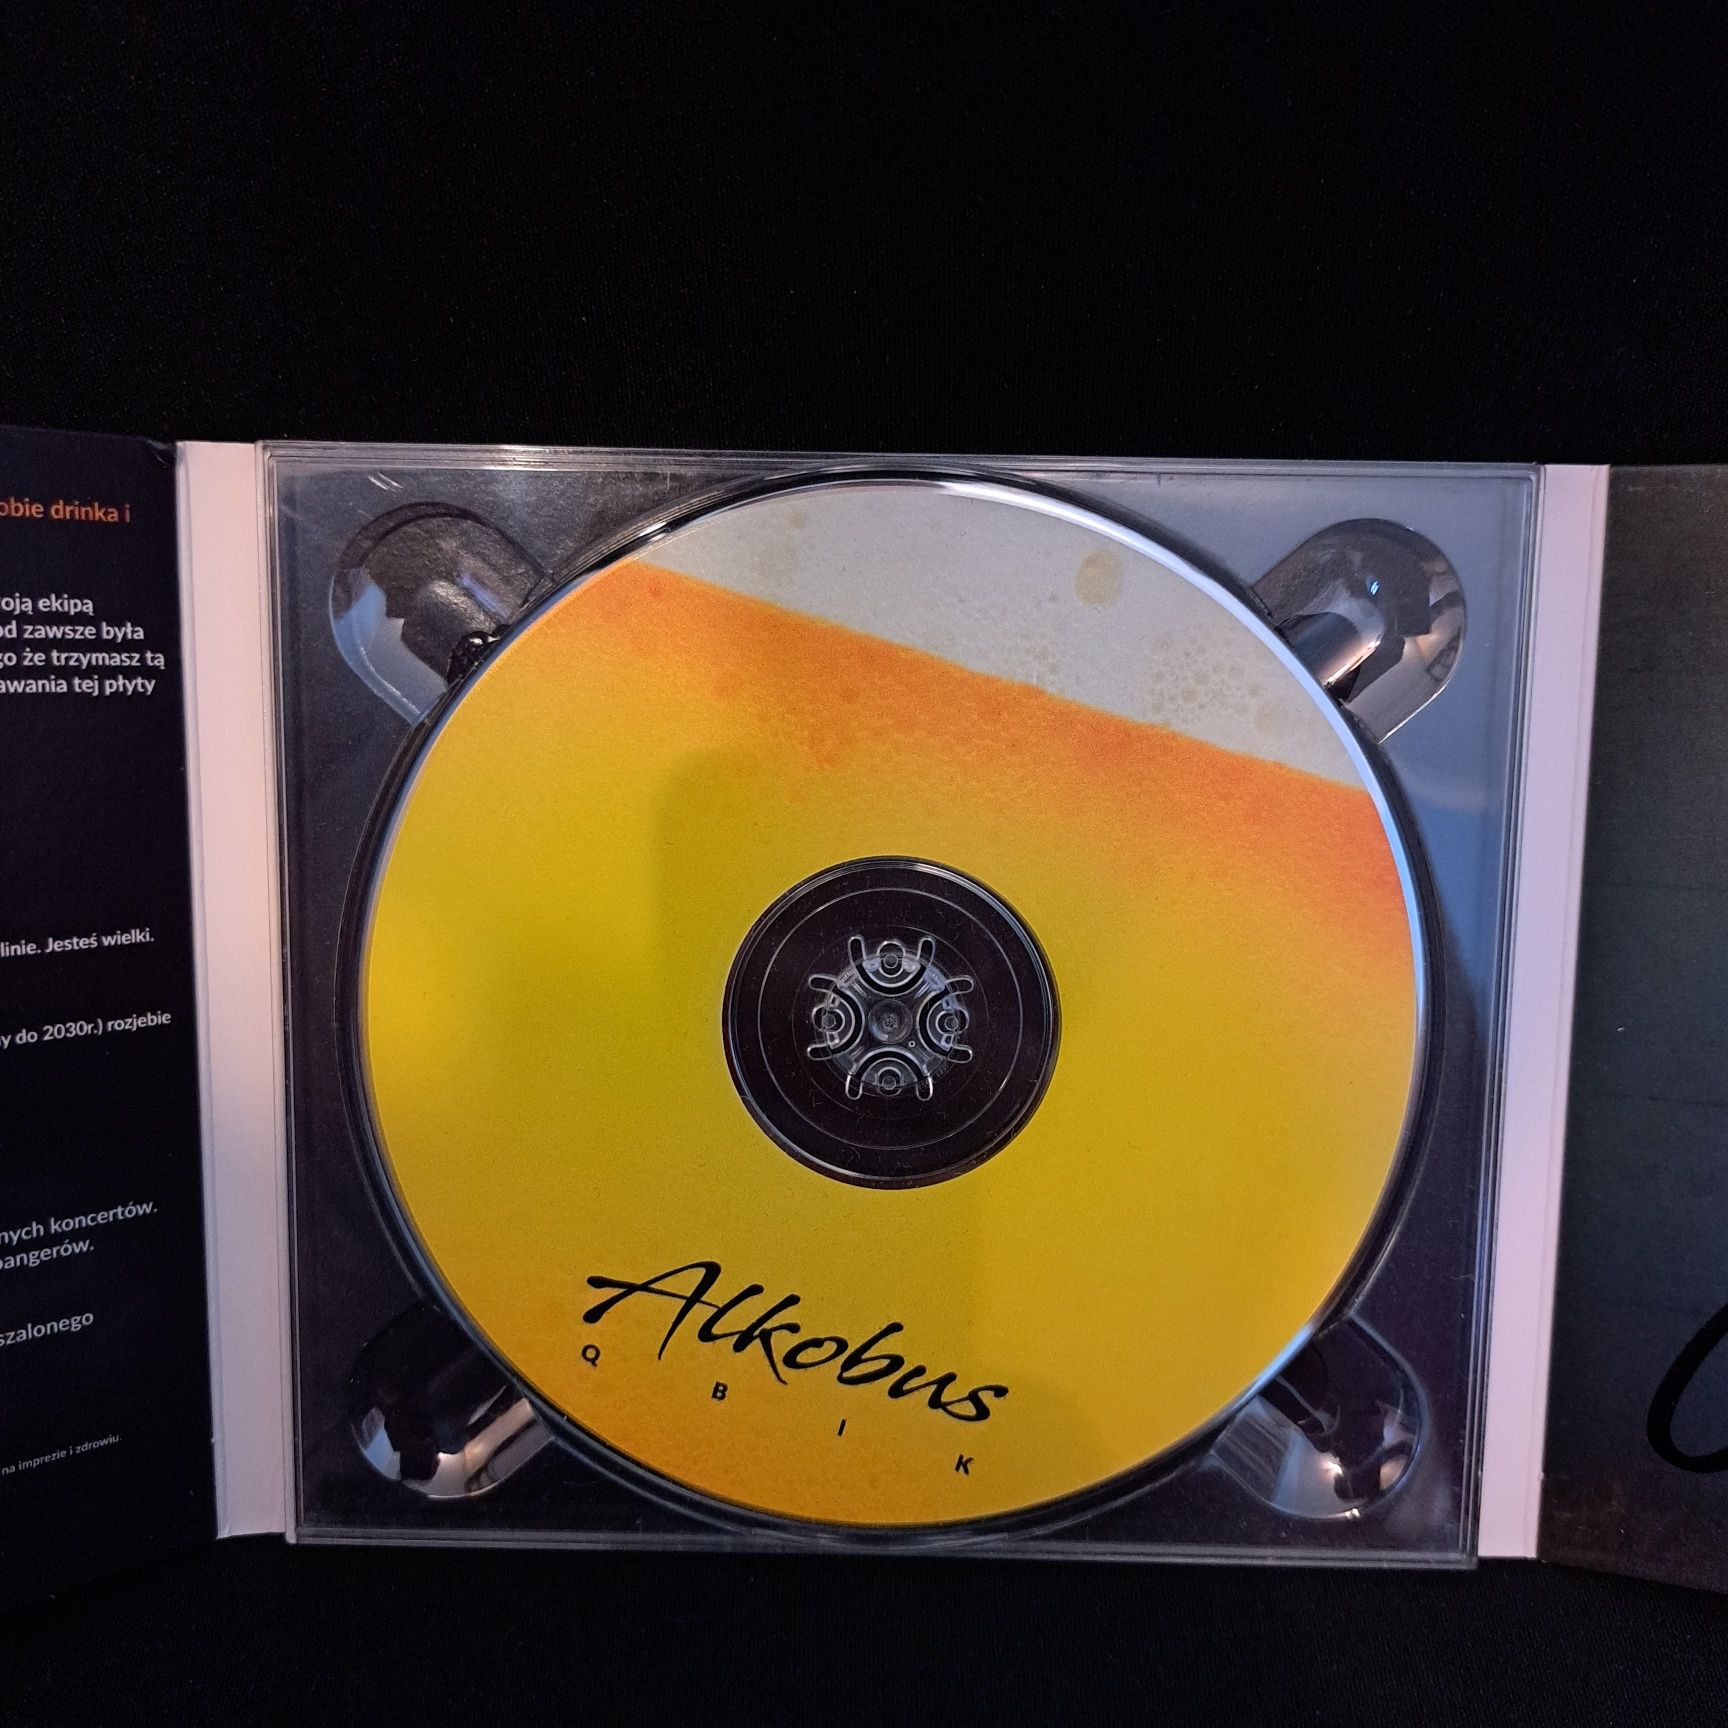 Płyta Qbik - Alkobus CD Autograf